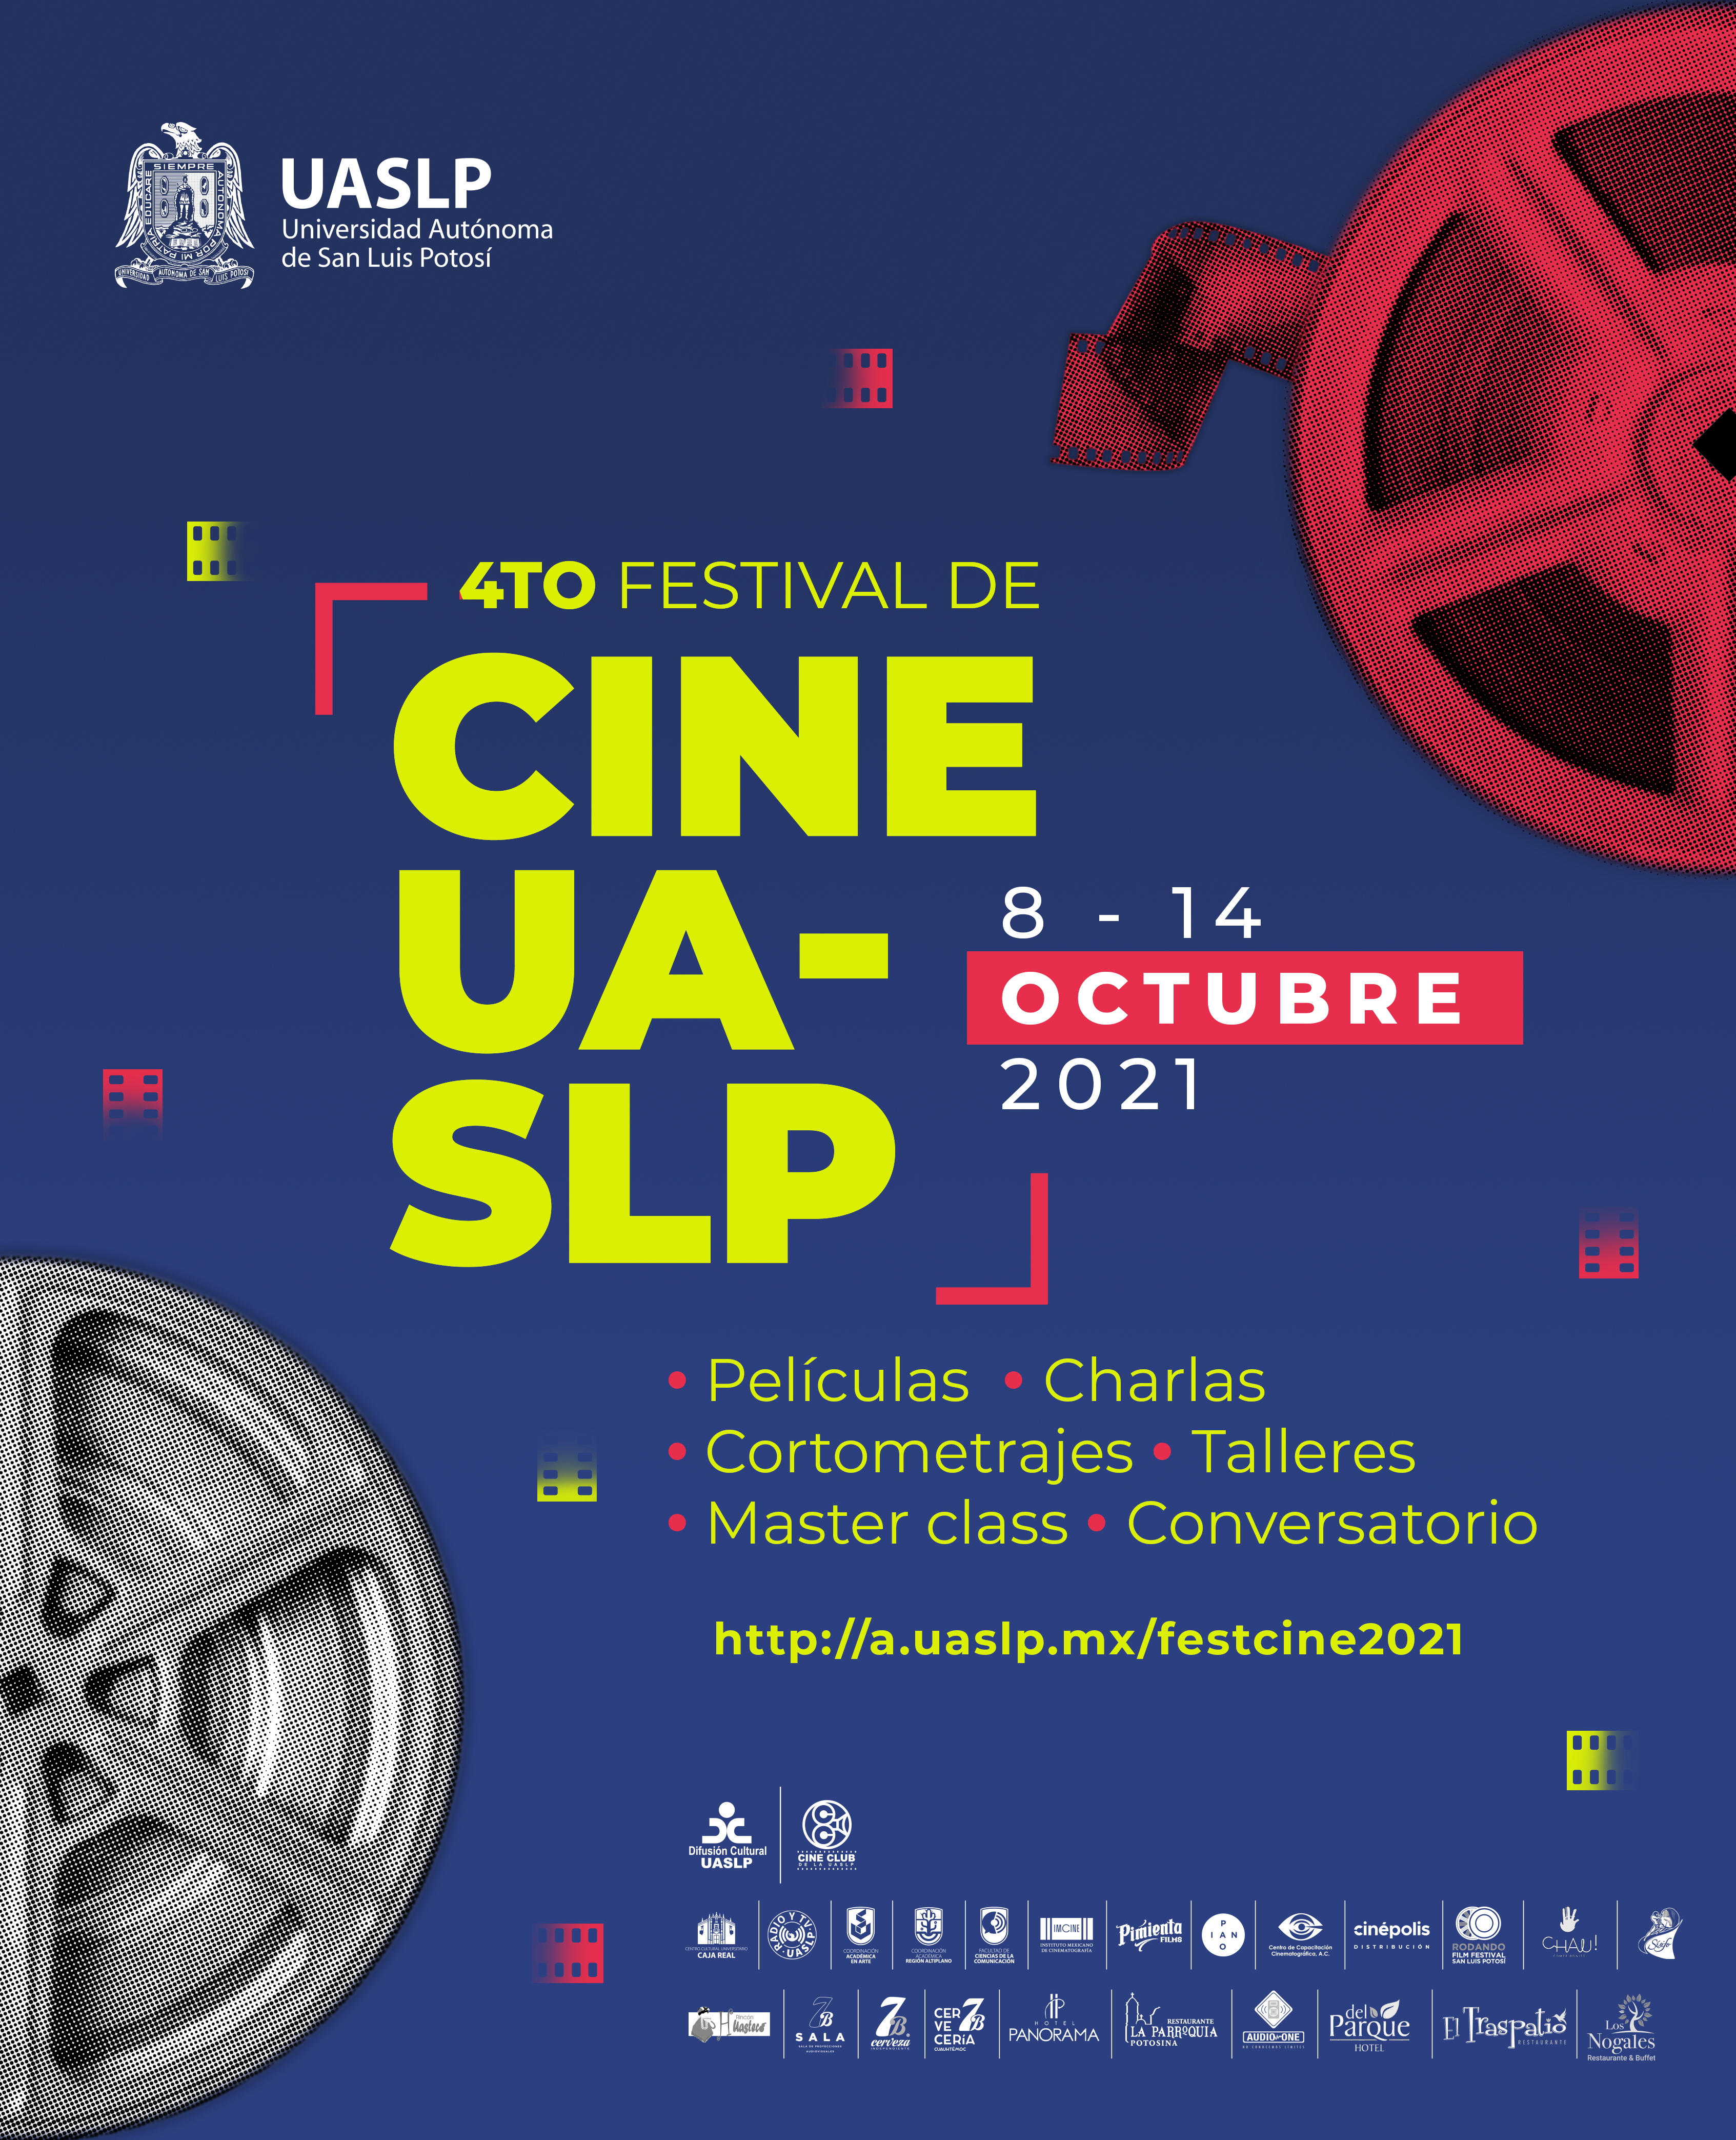 Muestra de películas y cortometrajes. El acceso es libre. Actividades presenciales y virtuales. Sedes en San Luis Potosí y Matehuala